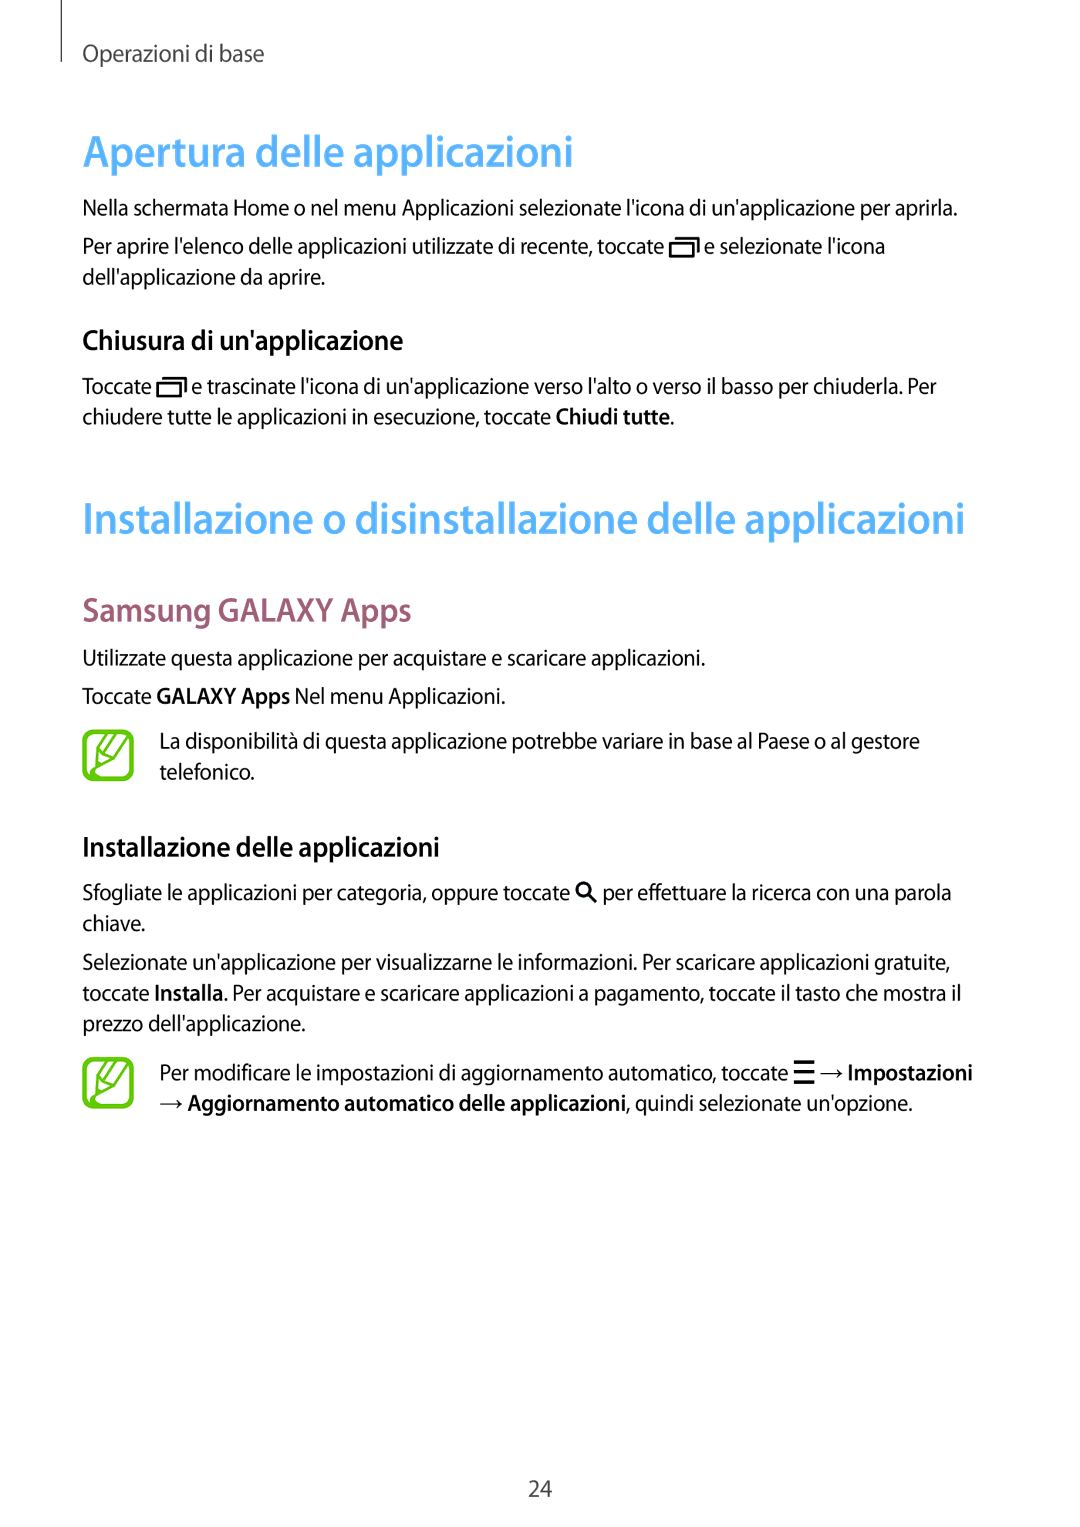 Samsung SM-T113NDWATUR, SM-T113NYKATUR manual Apertura delle applicazioni, Samsung Galaxy Apps, Chiusura di unapplicazione 